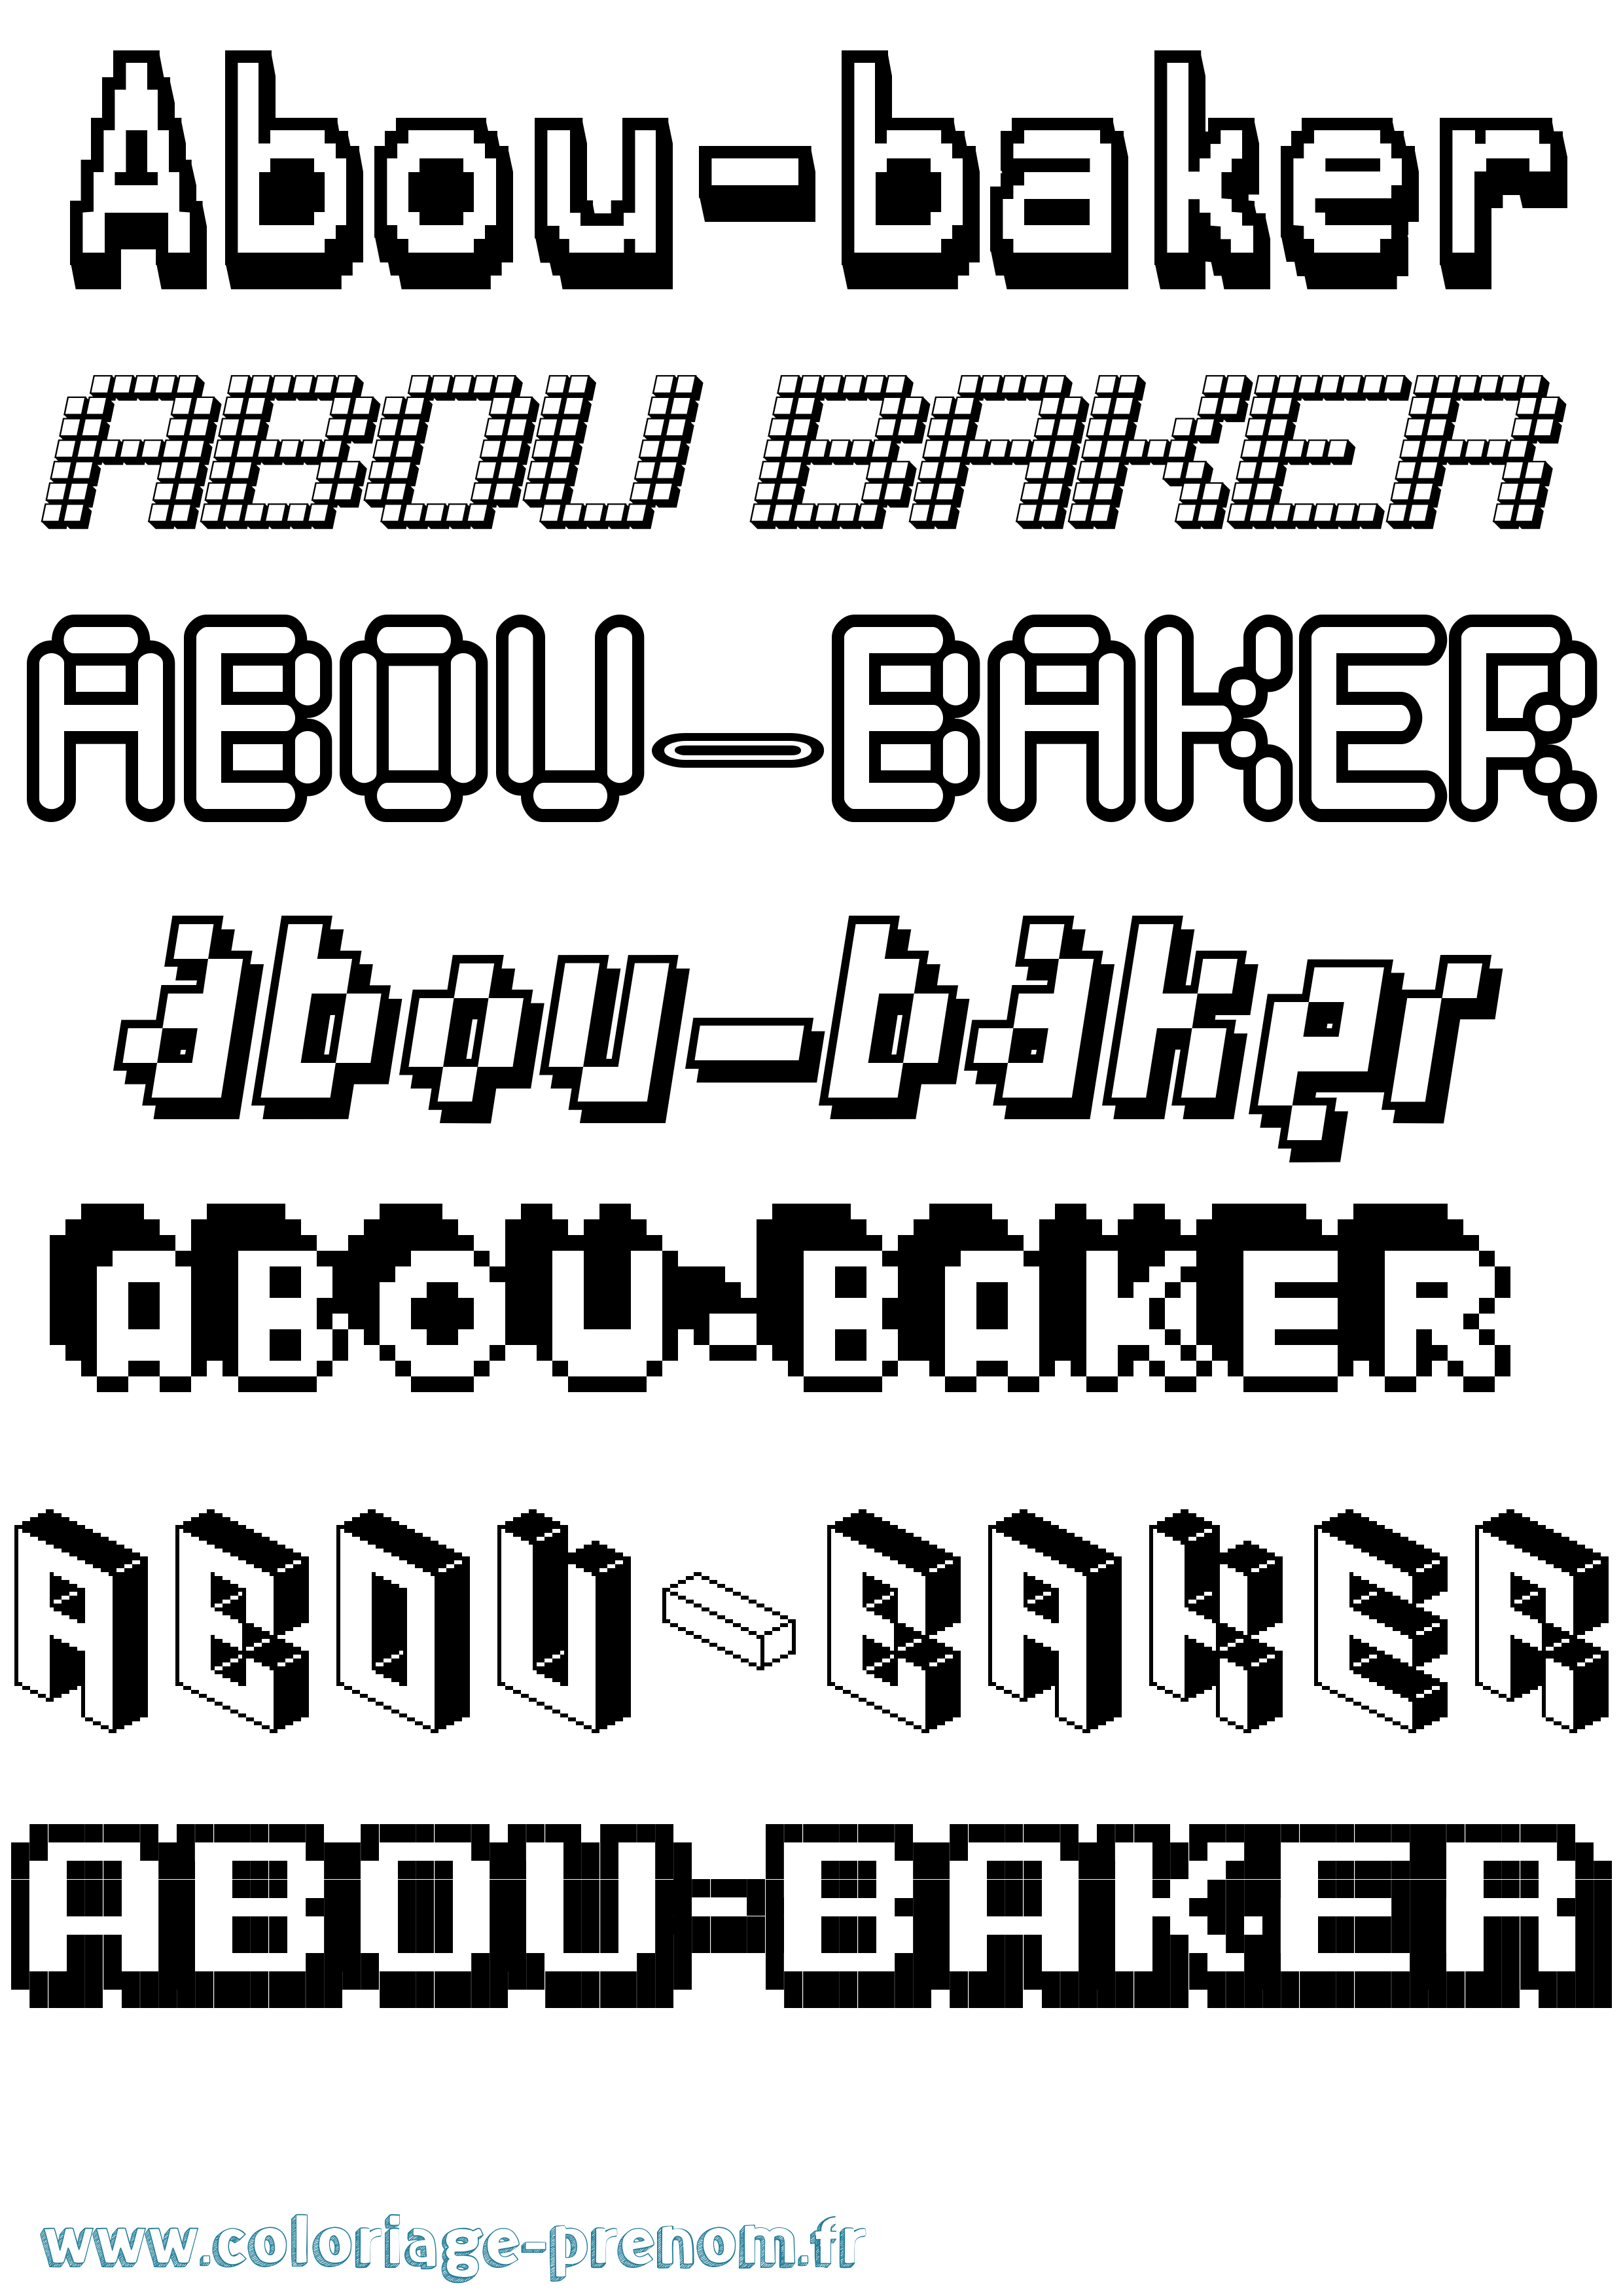 Coloriage prénom Abou-Baker Pixel